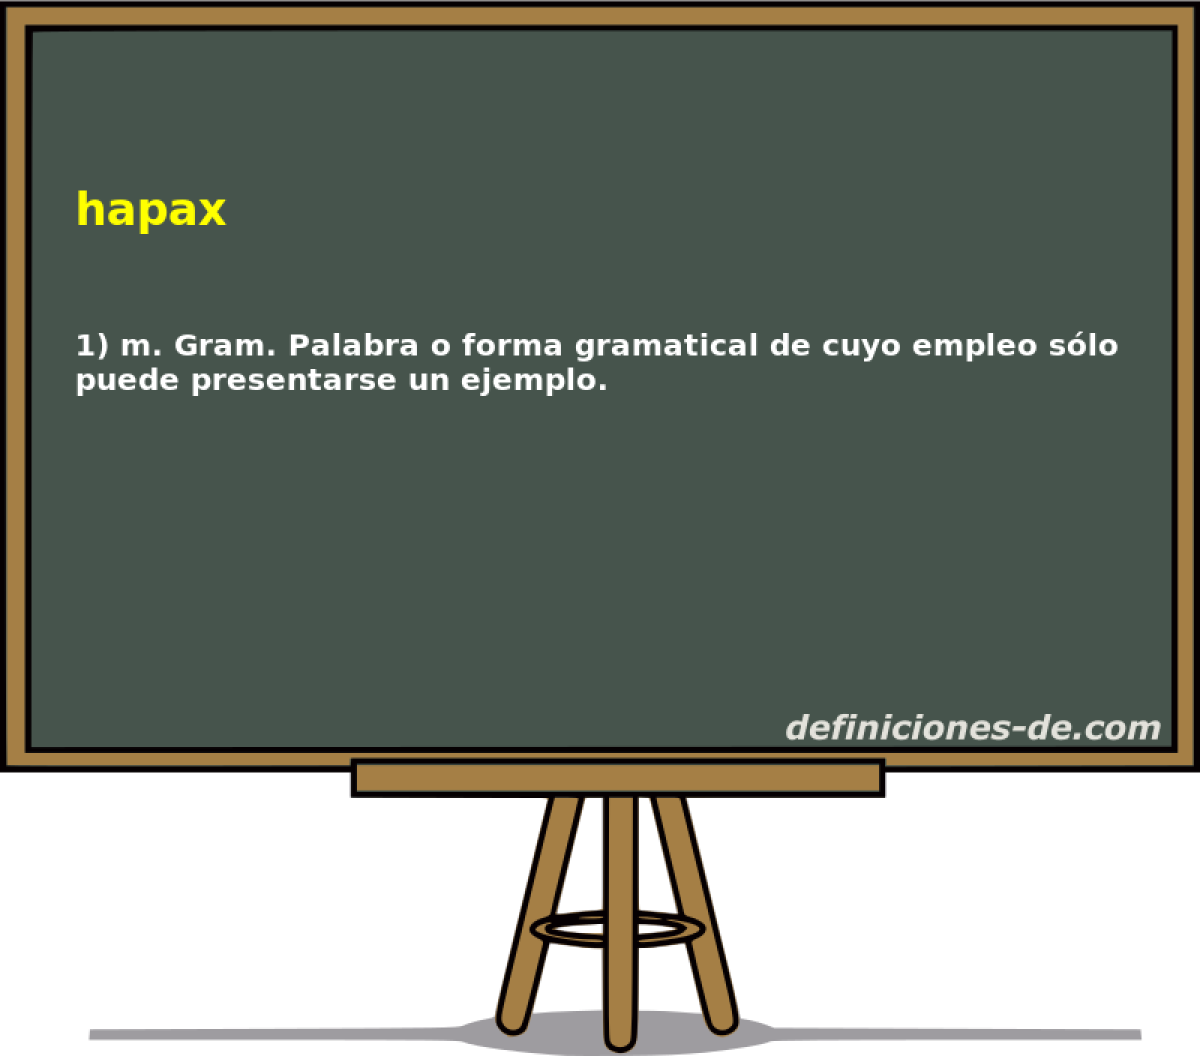 hapax 